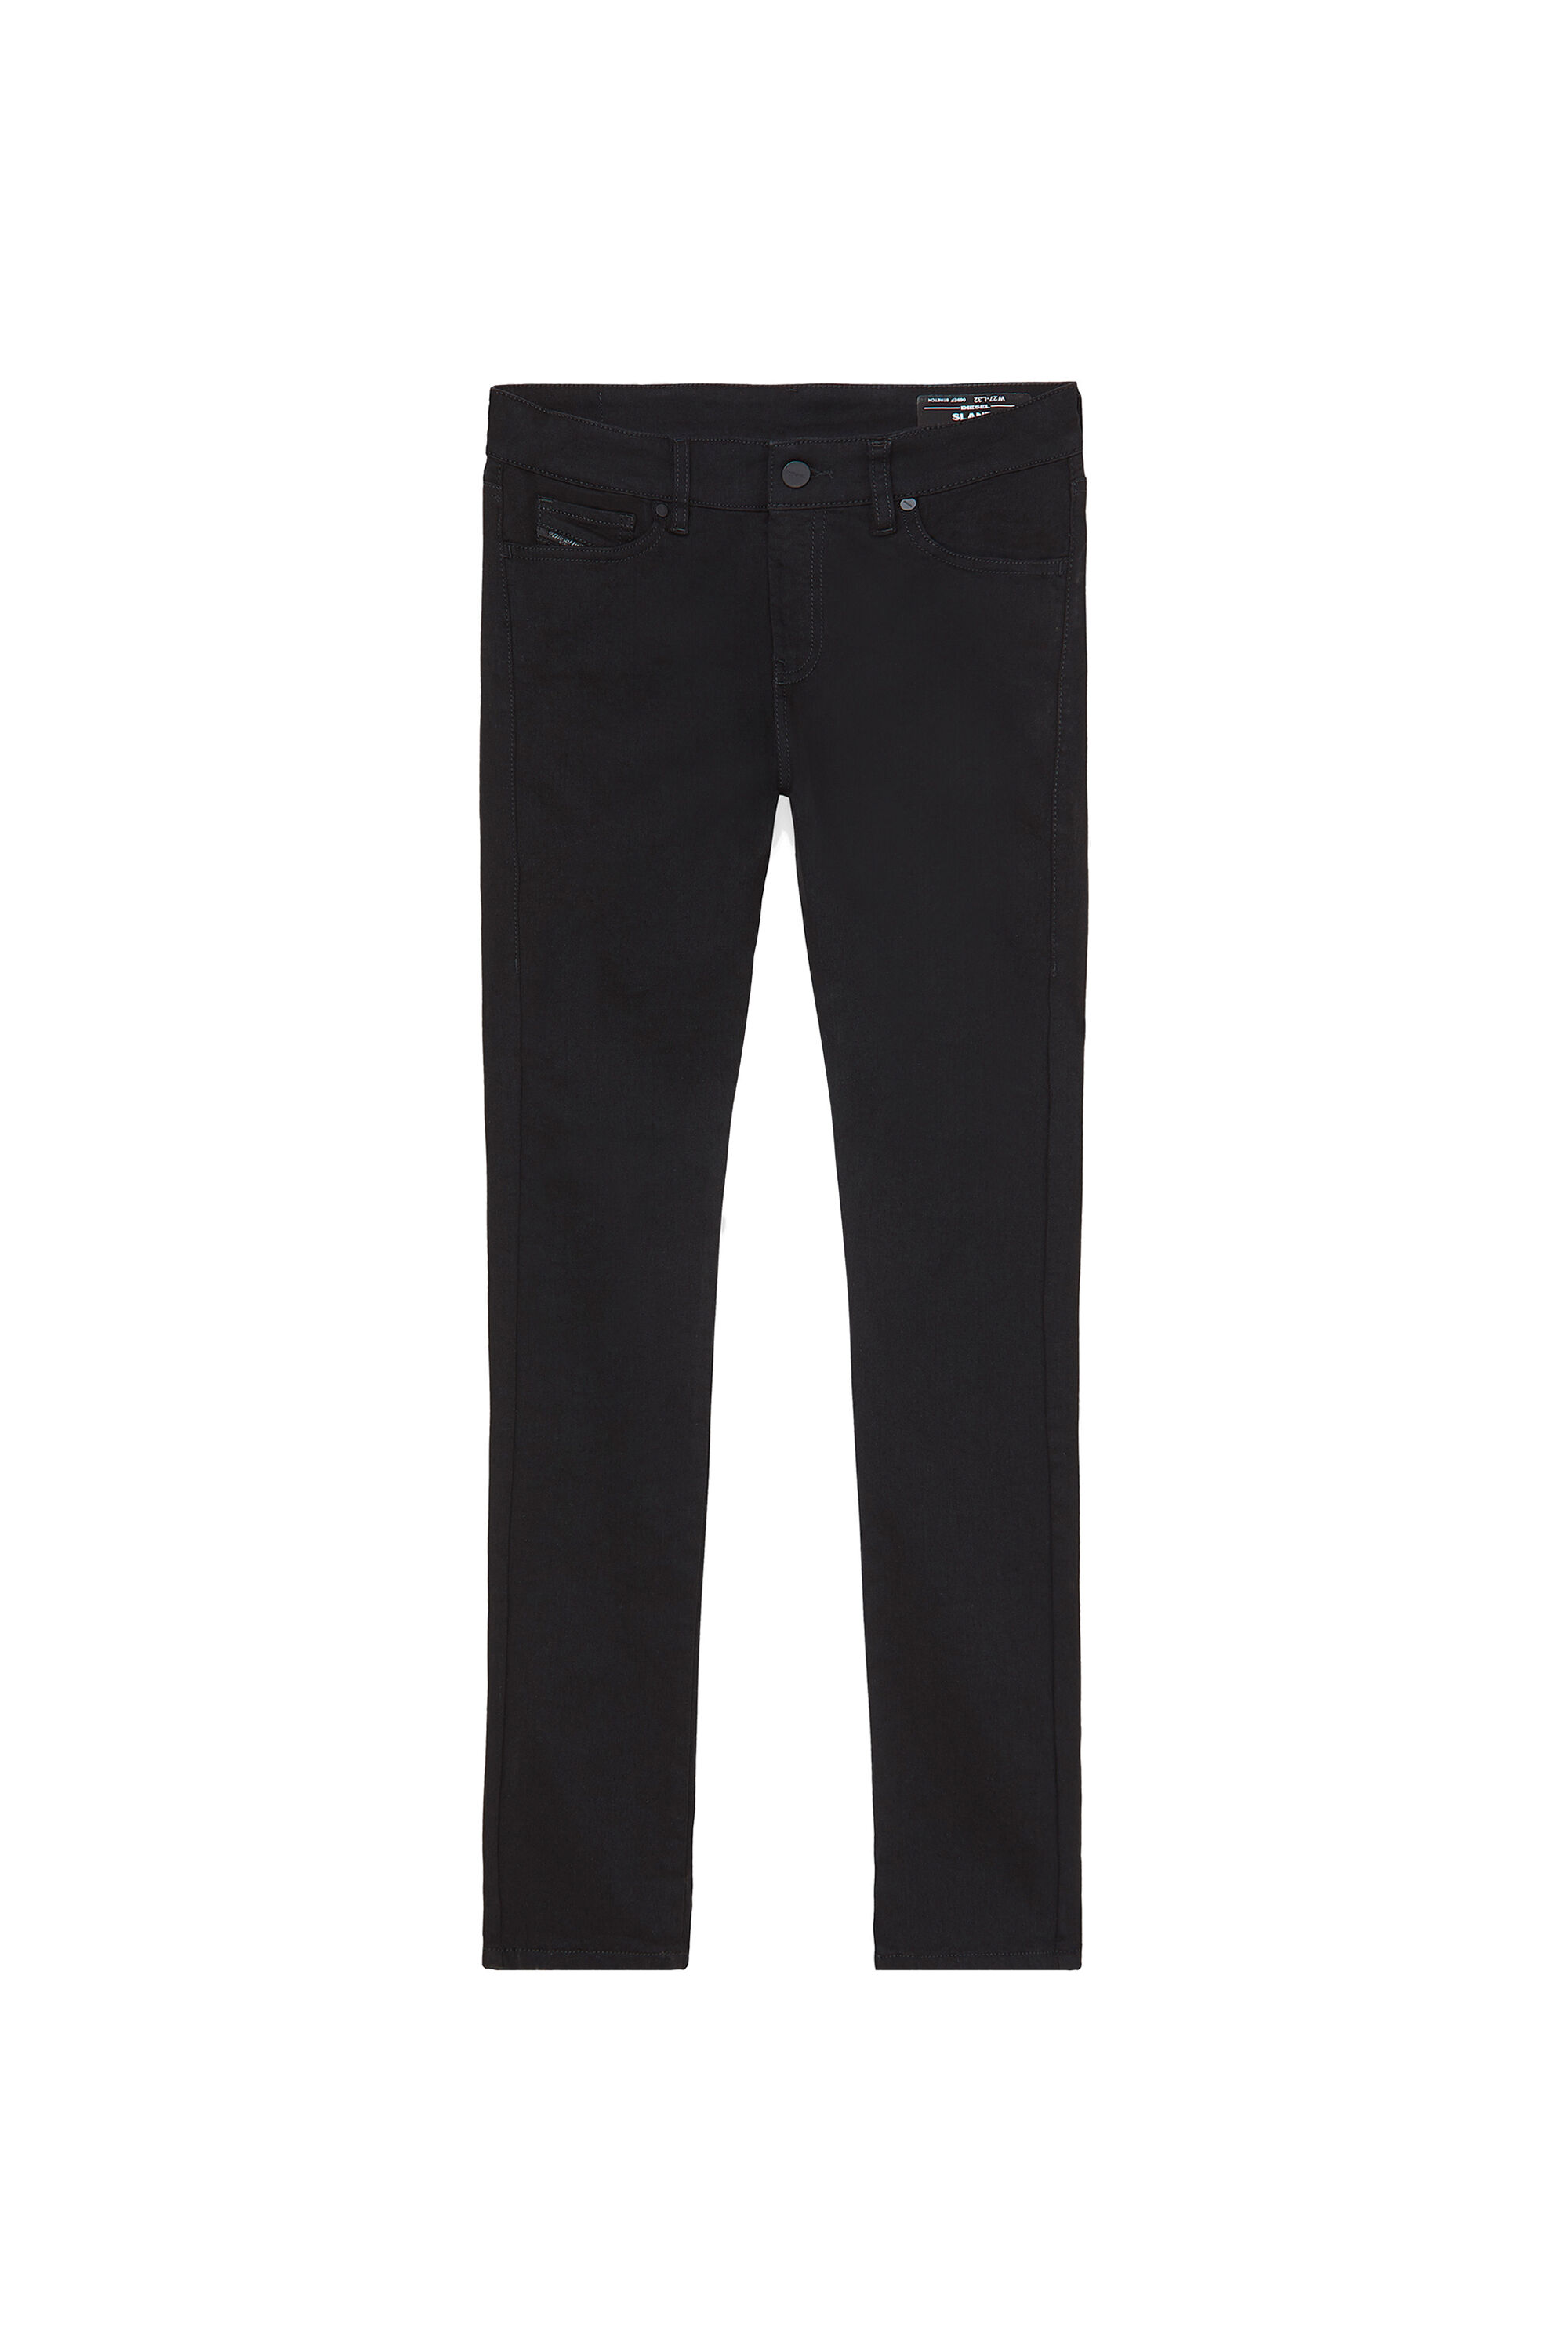 Diesel - Slandy Skinny Jeans 069EF, Black/Dark Grey - Image 2